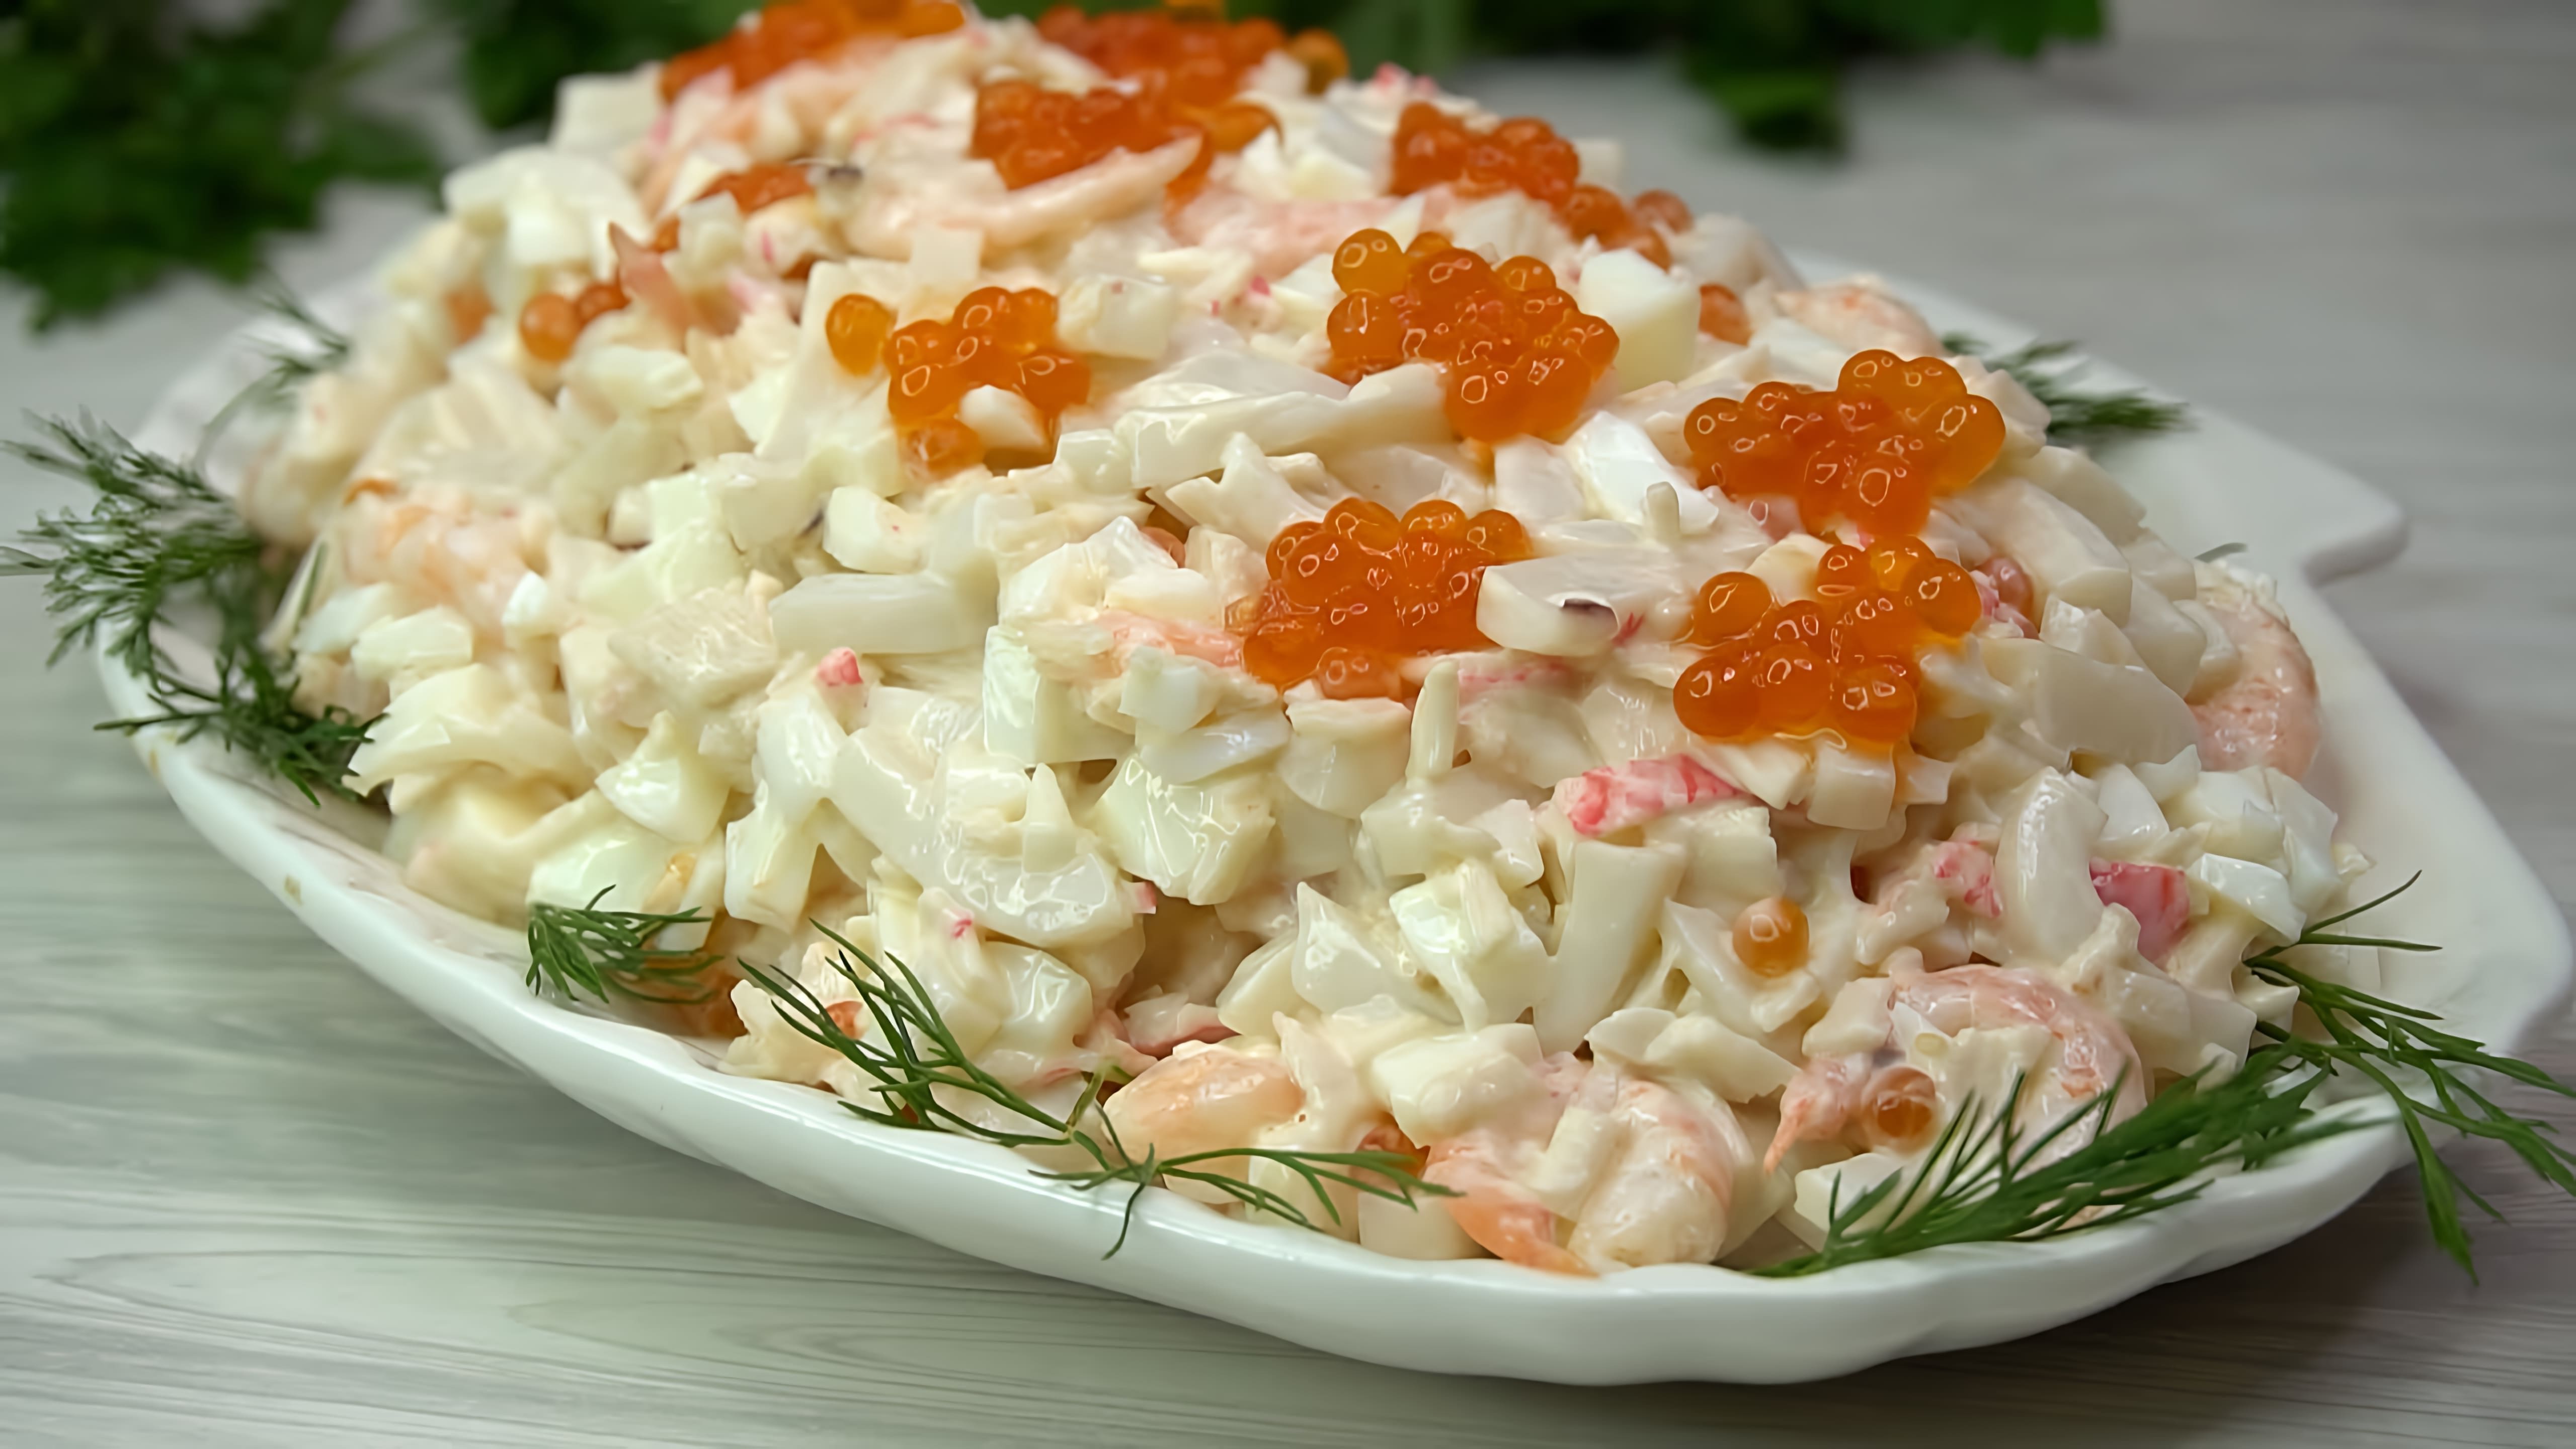 В этом видео демонстрируется рецепт салата "Нептун" из морепродуктов, который идеально подходит для новогоднего стола